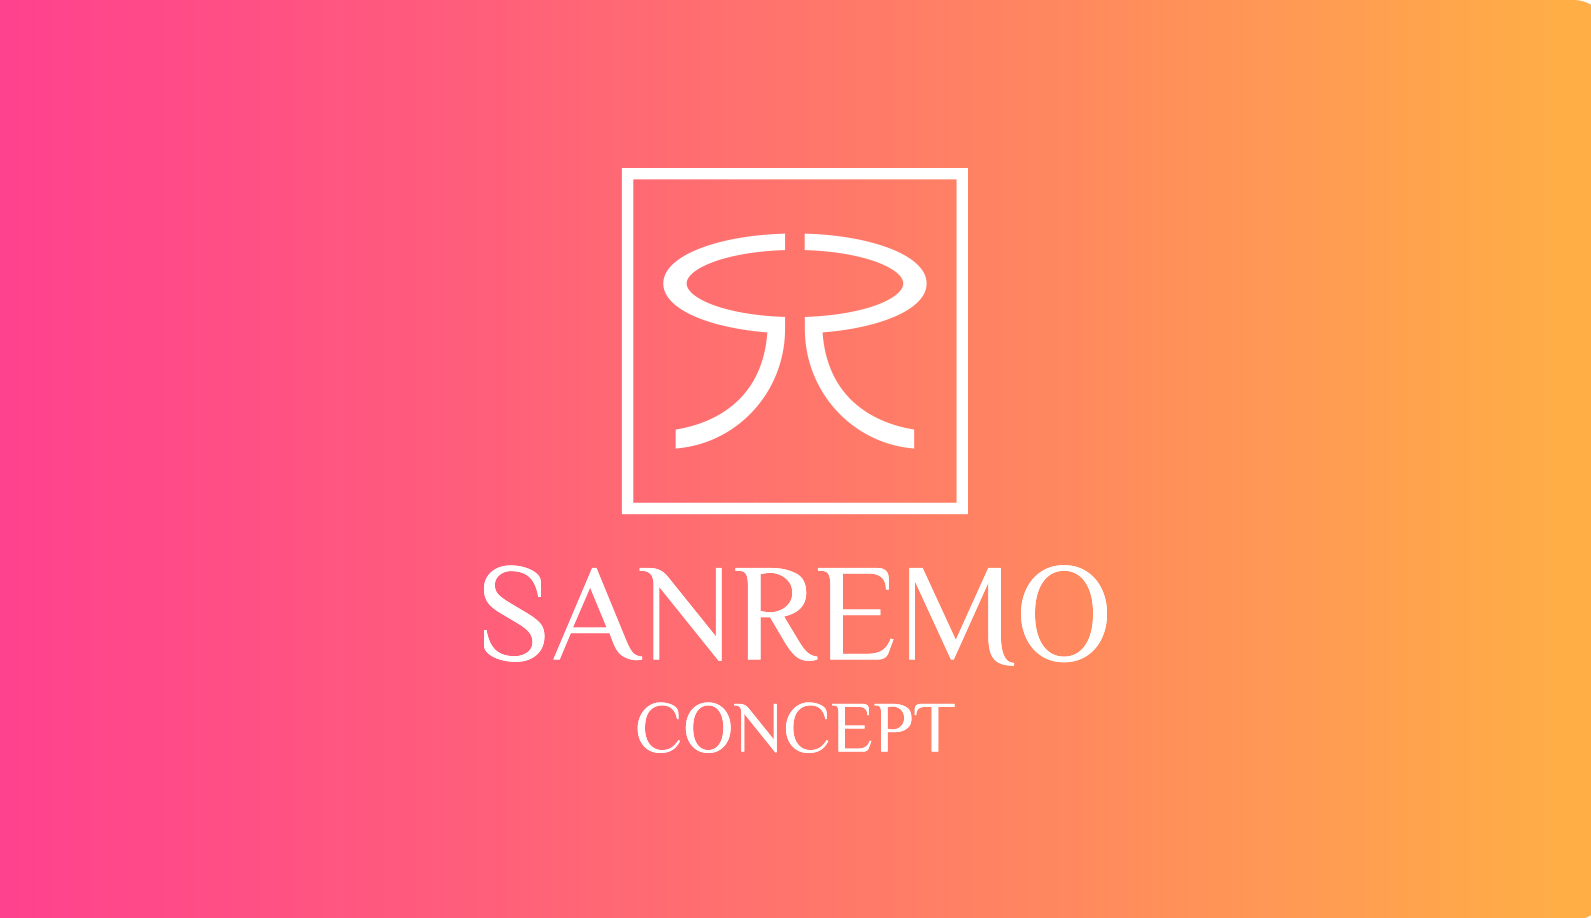 Sanremo Concept